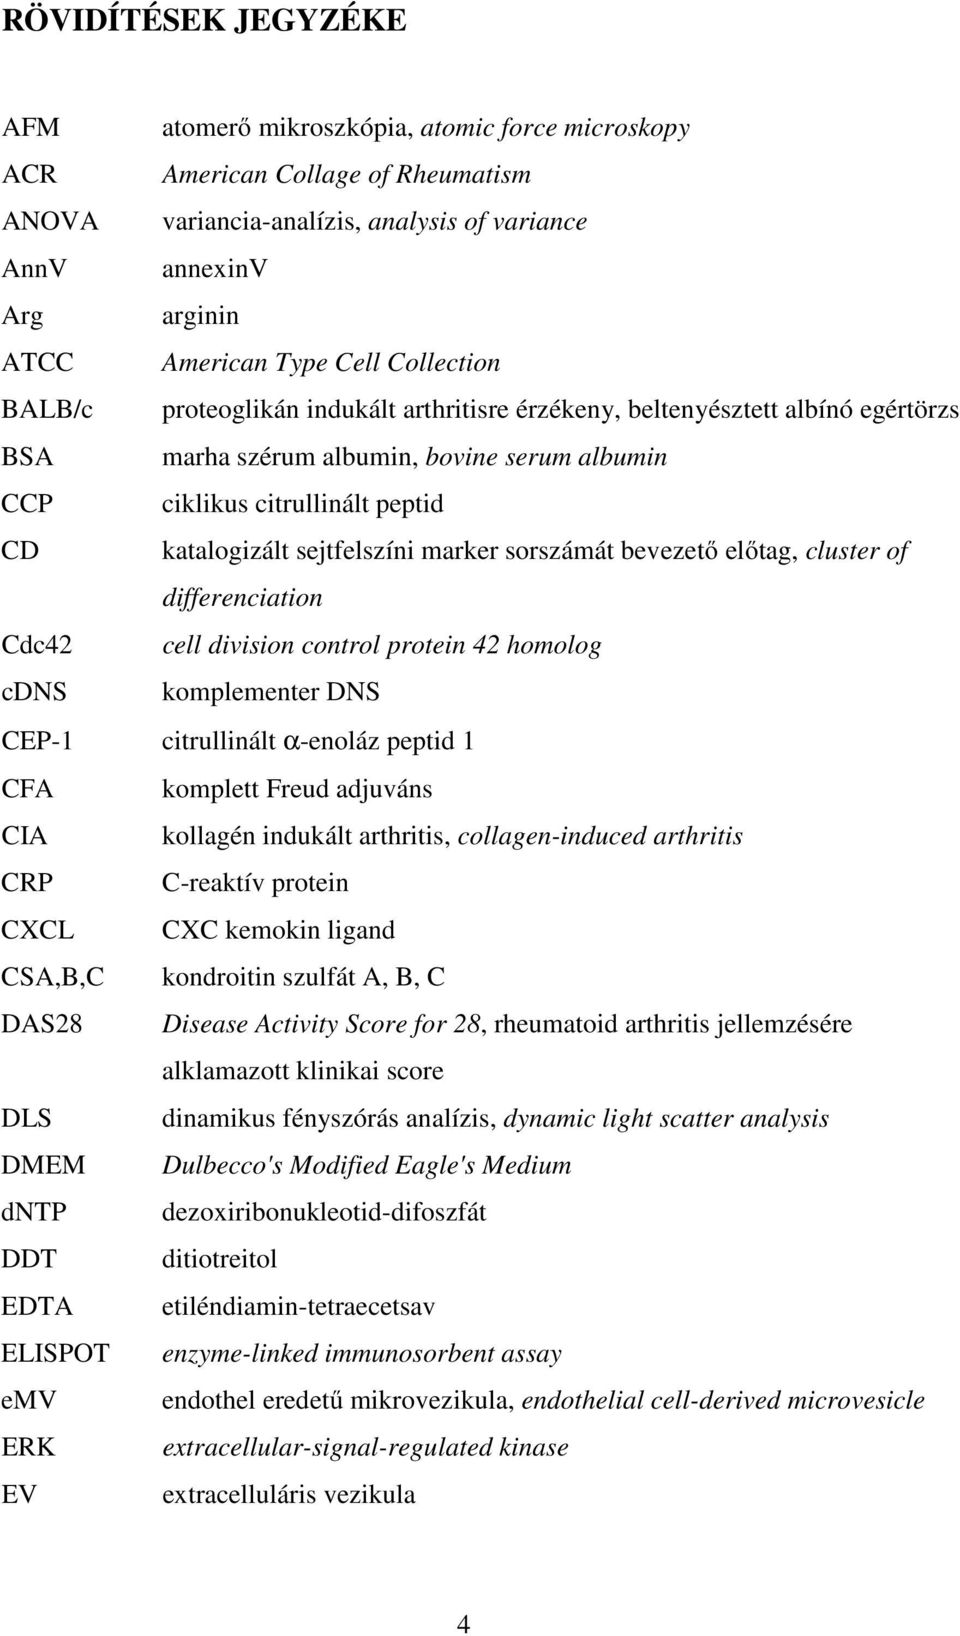 sejtfelszíni marker sorszámát bevezető előtag, cluster of differenciation Cdc42 cell division control protein 42 homolog cdns komplementer DNS CEP-1 citrullinált α-enoláz peptid 1 CFA komplett Freud